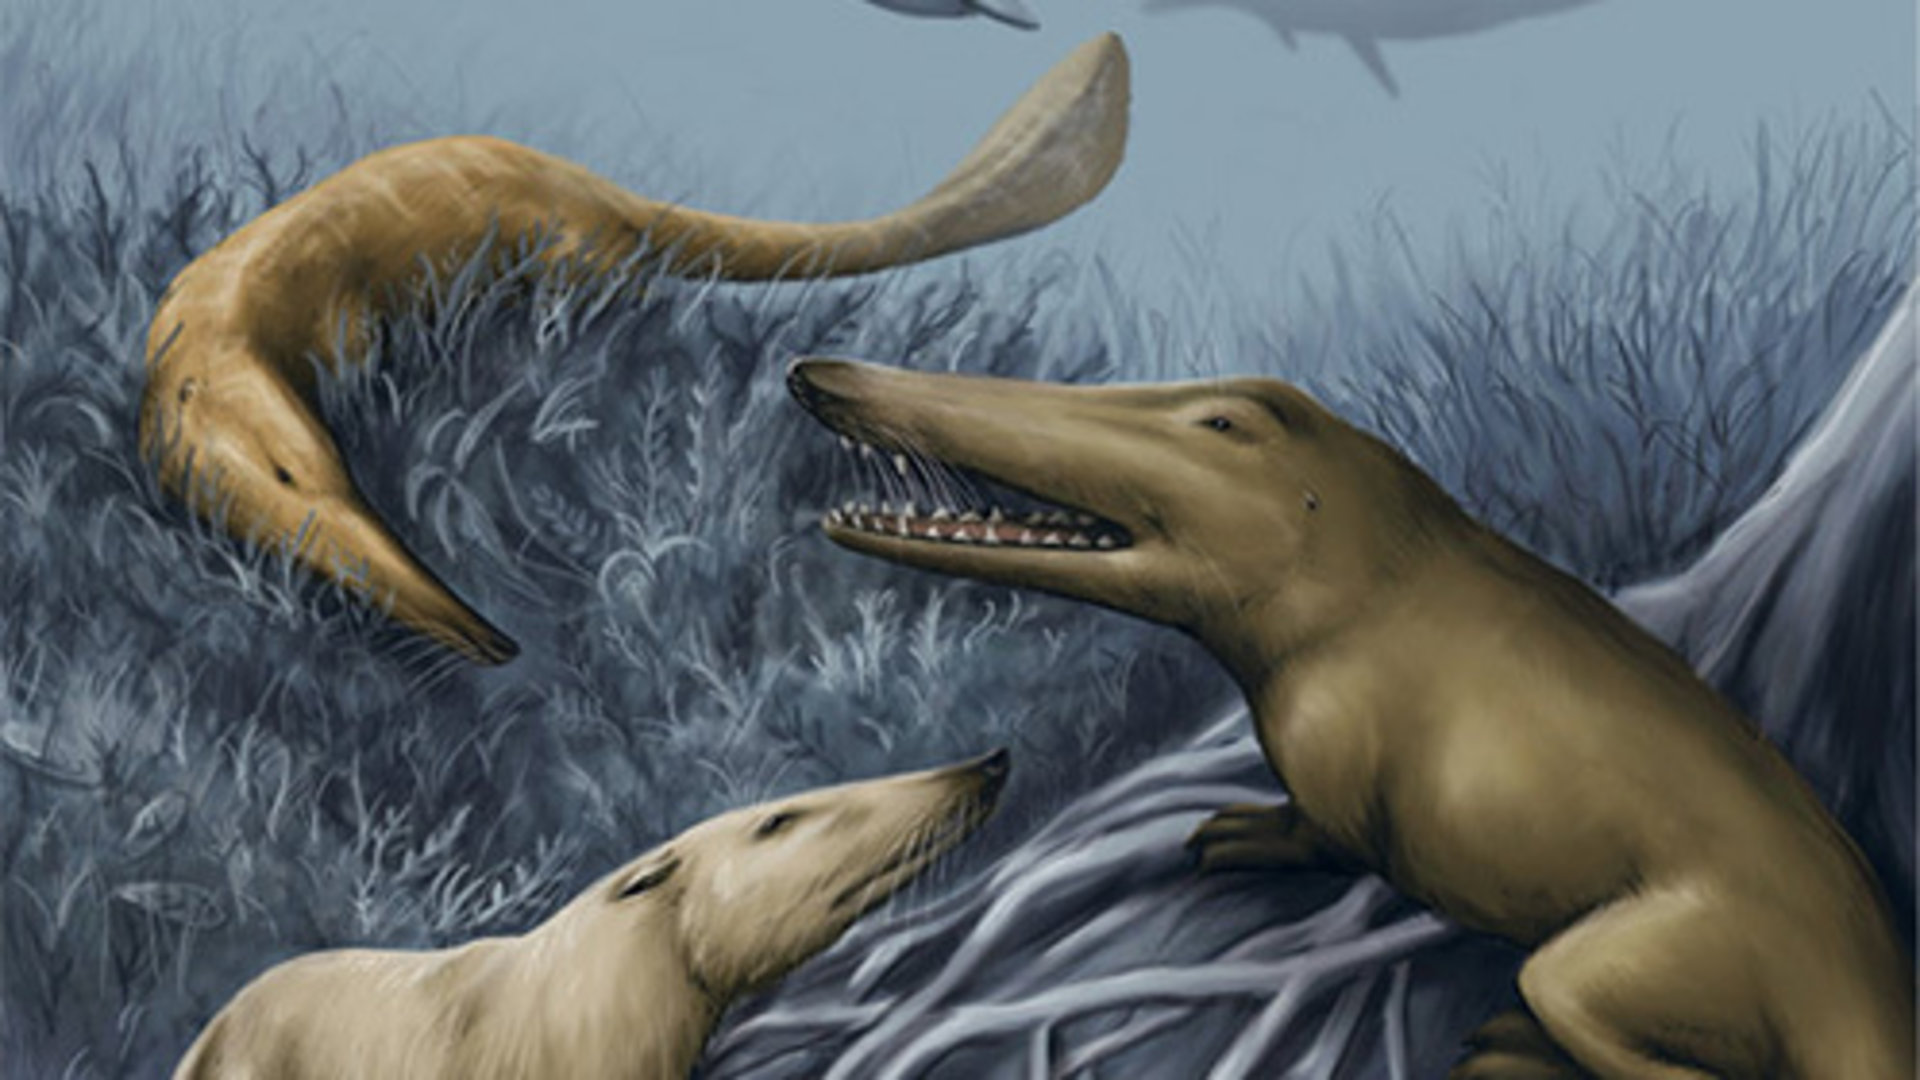 巴基鲸的祖先图片